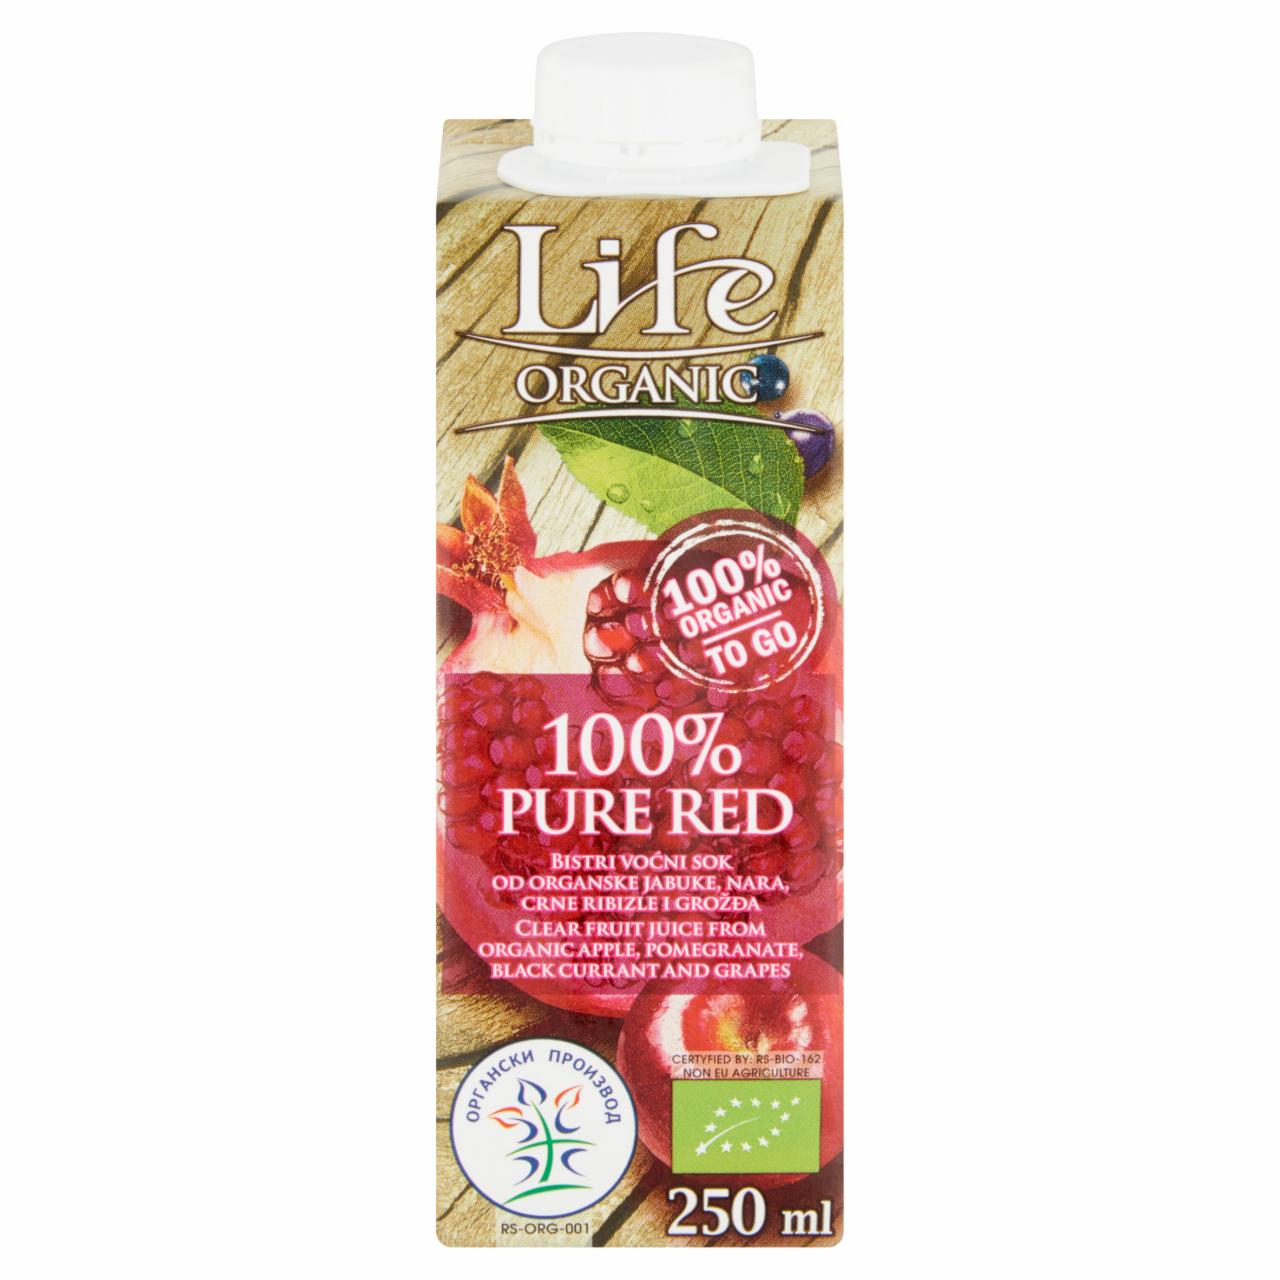 Képek - Life Organic Pure Red 100% szűrt organikus gyümölcsital 250 ml